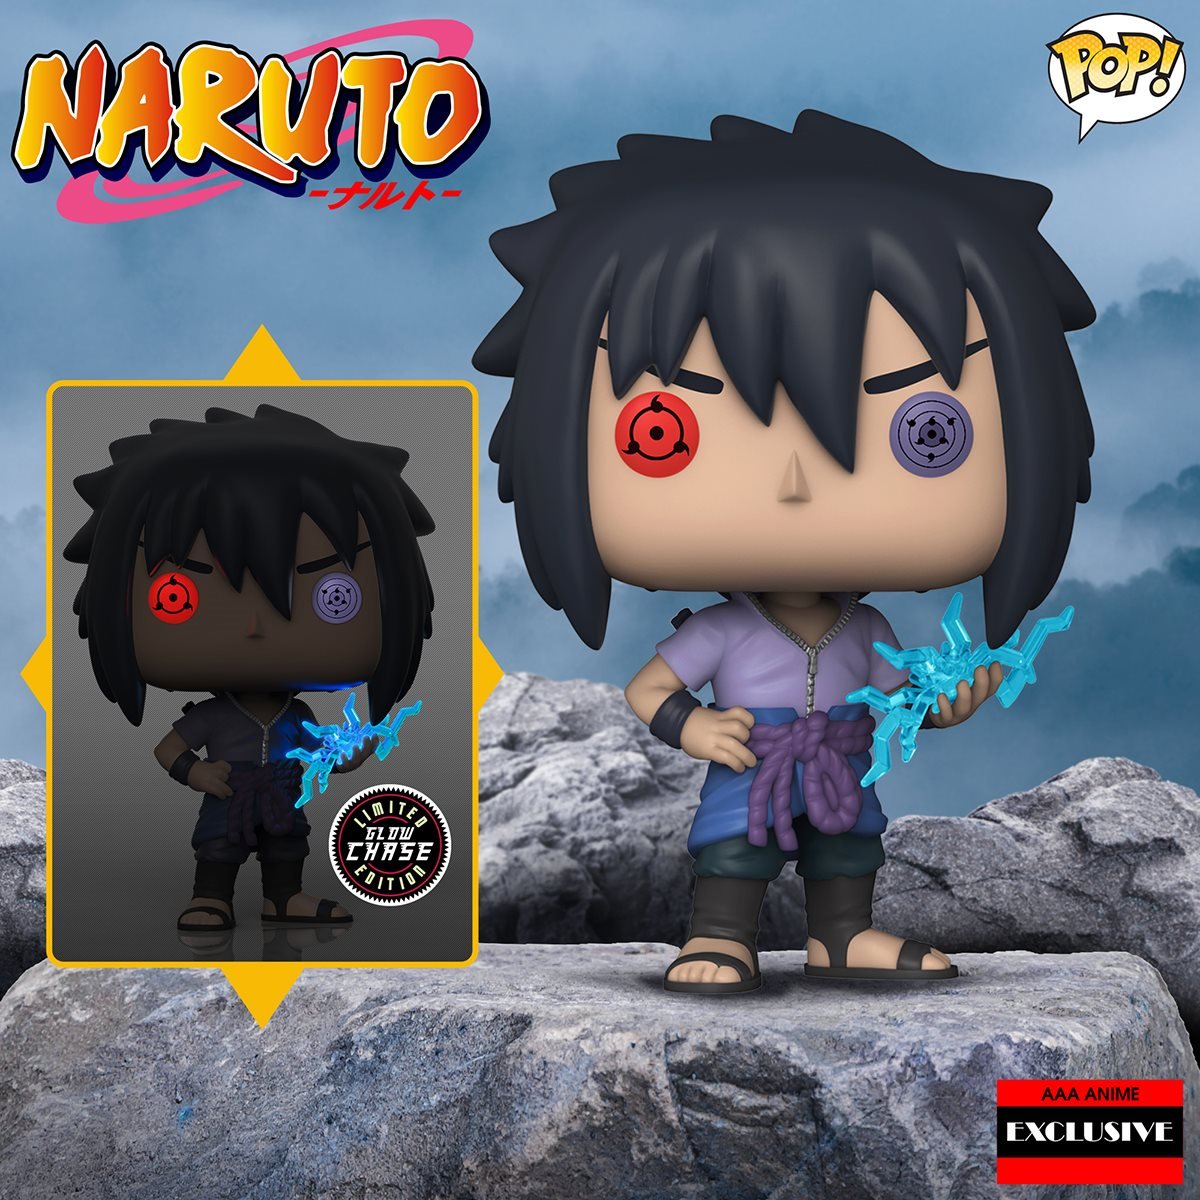 Naruto Funko Pop Animation Sasuke Vinyl Figure 